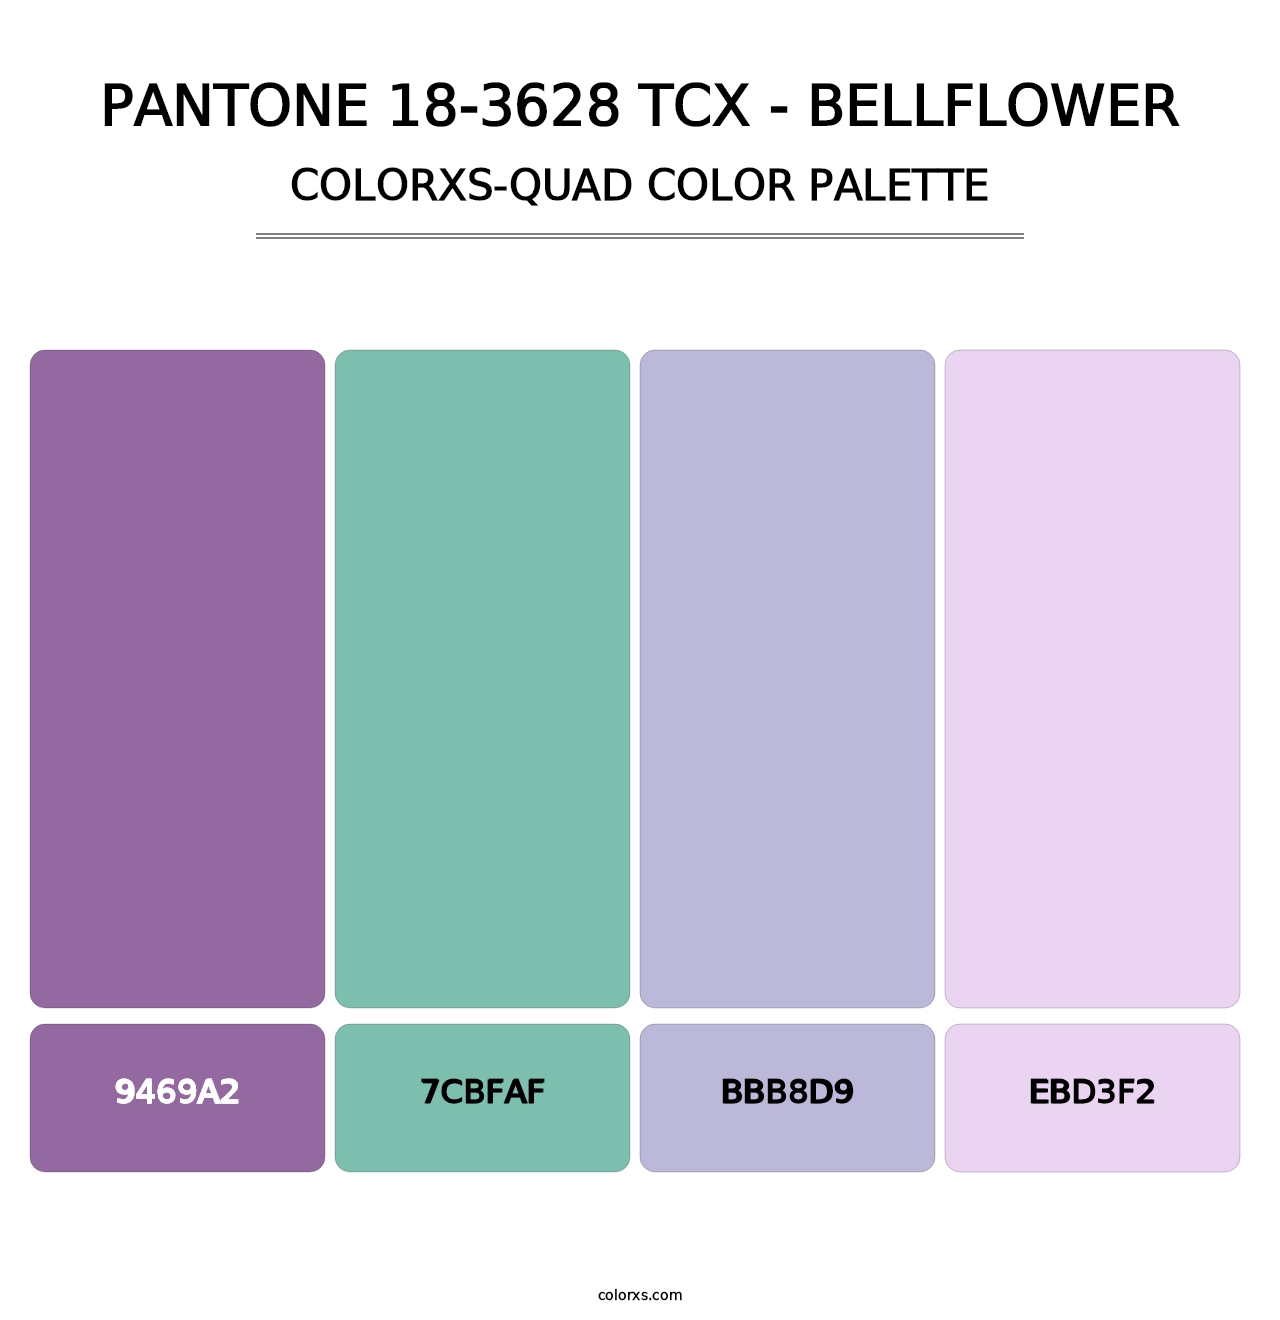 PANTONE 18-3628 TCX - Bellflower - Colorxs Quad Palette